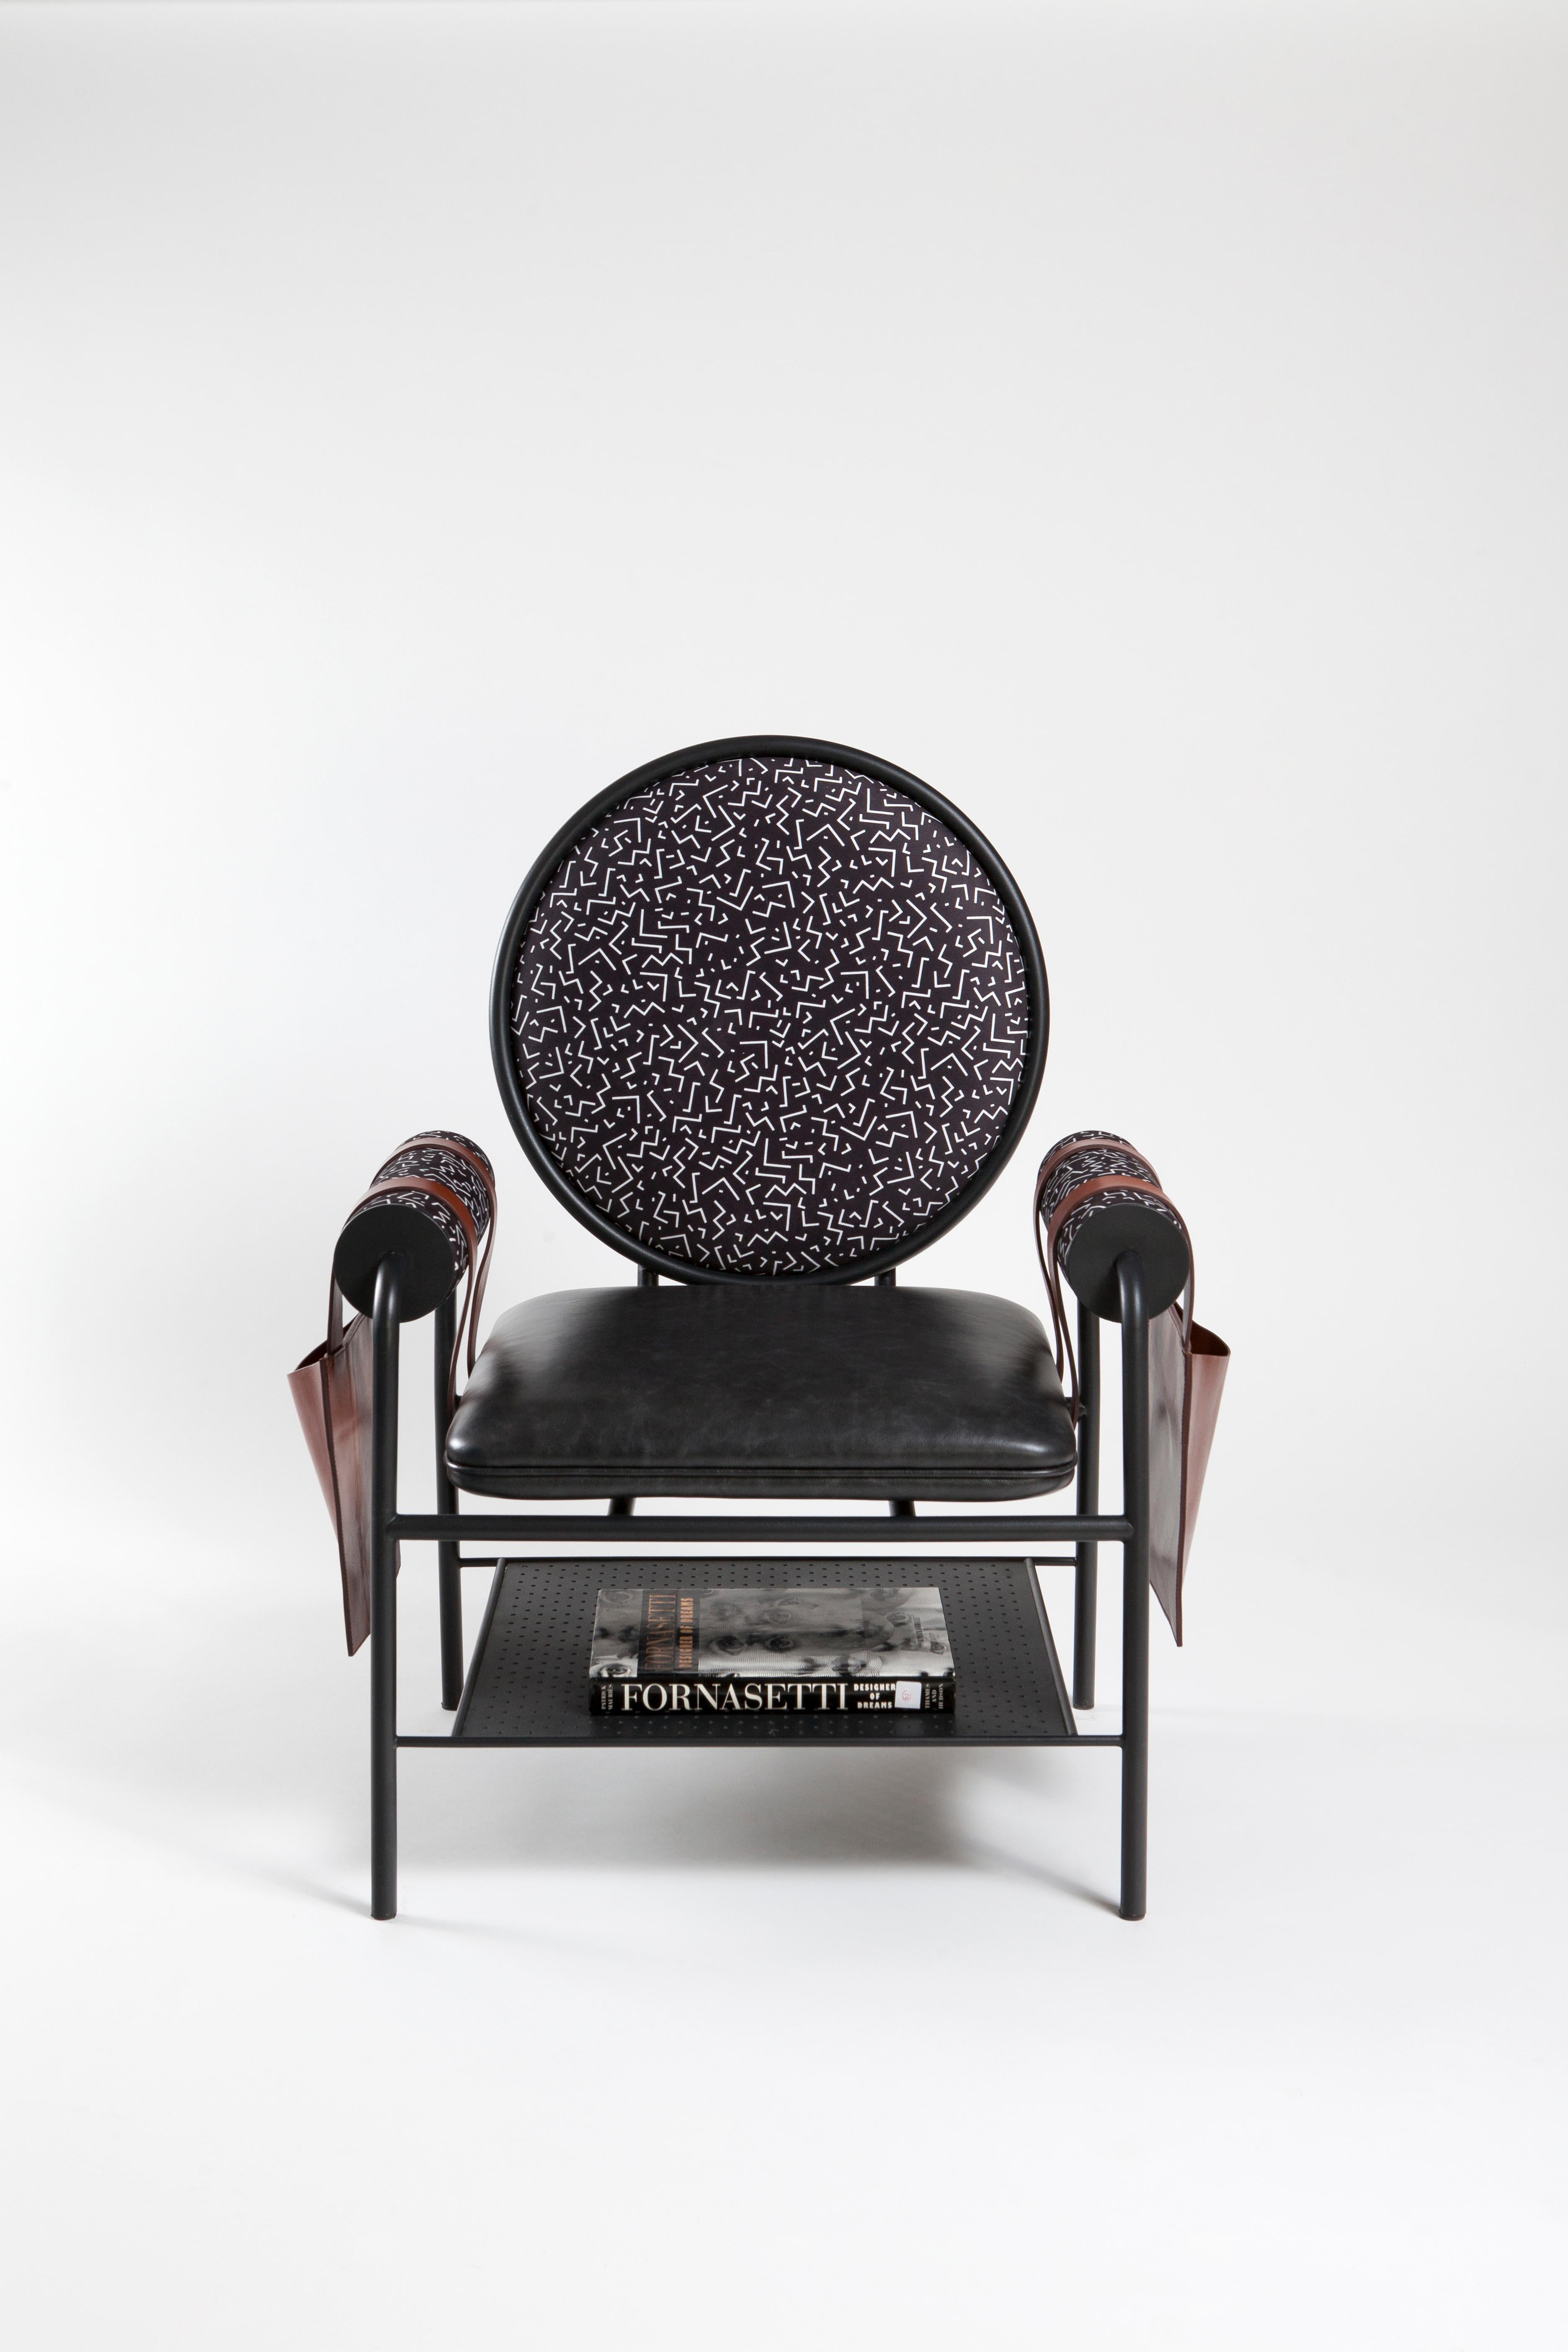 Kontra's Interpretation von Sessel.
Der Ledersessel bietet bequemes Sitzen mit eigenen Lederseitentaschen.

